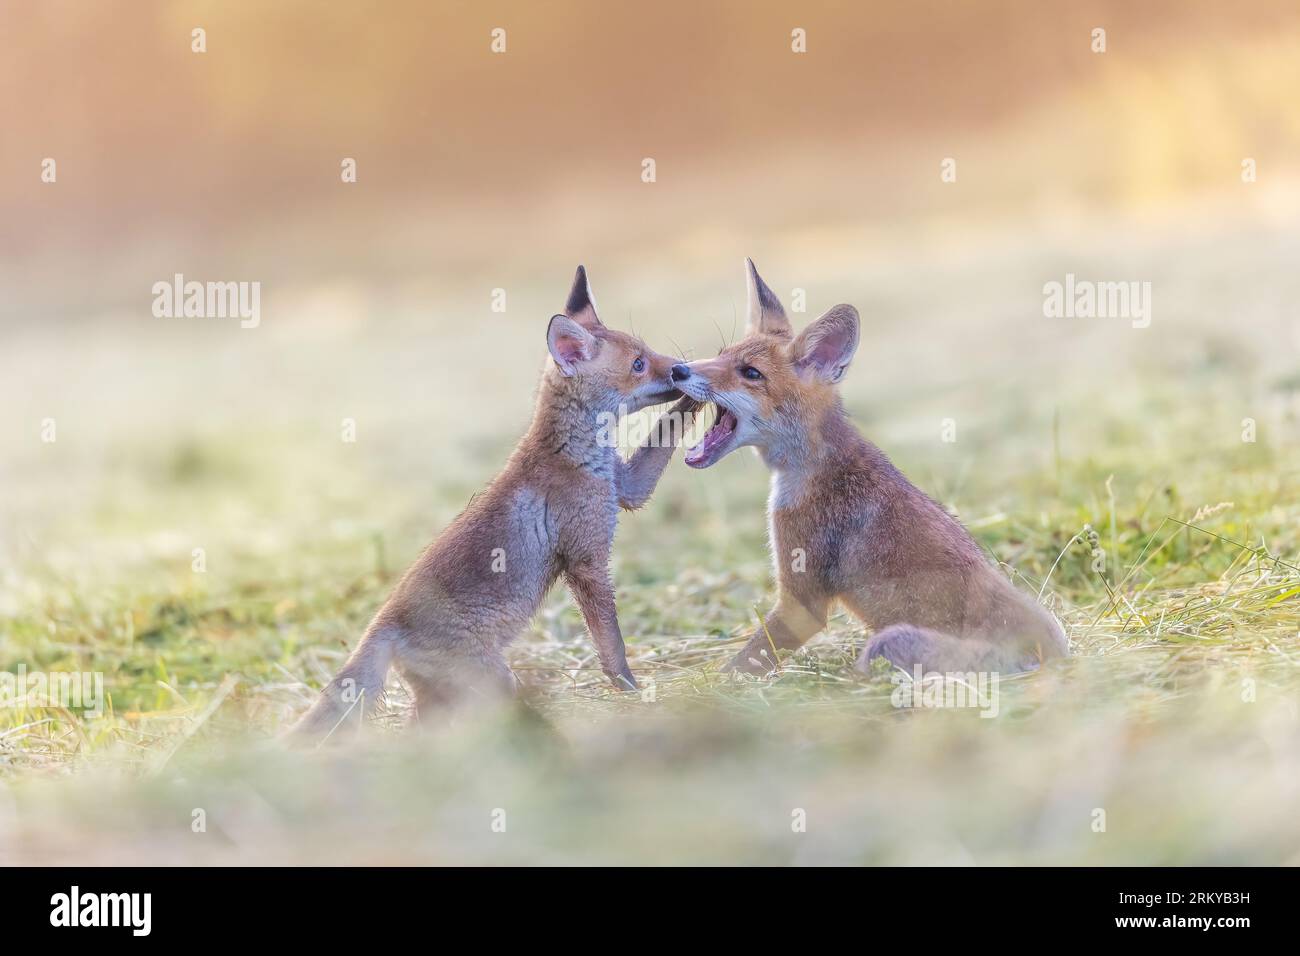 Portrait d'une paire de renards rouges jouant dans le champ à la lumière du soleil. Horizonzally. Banque D'Images